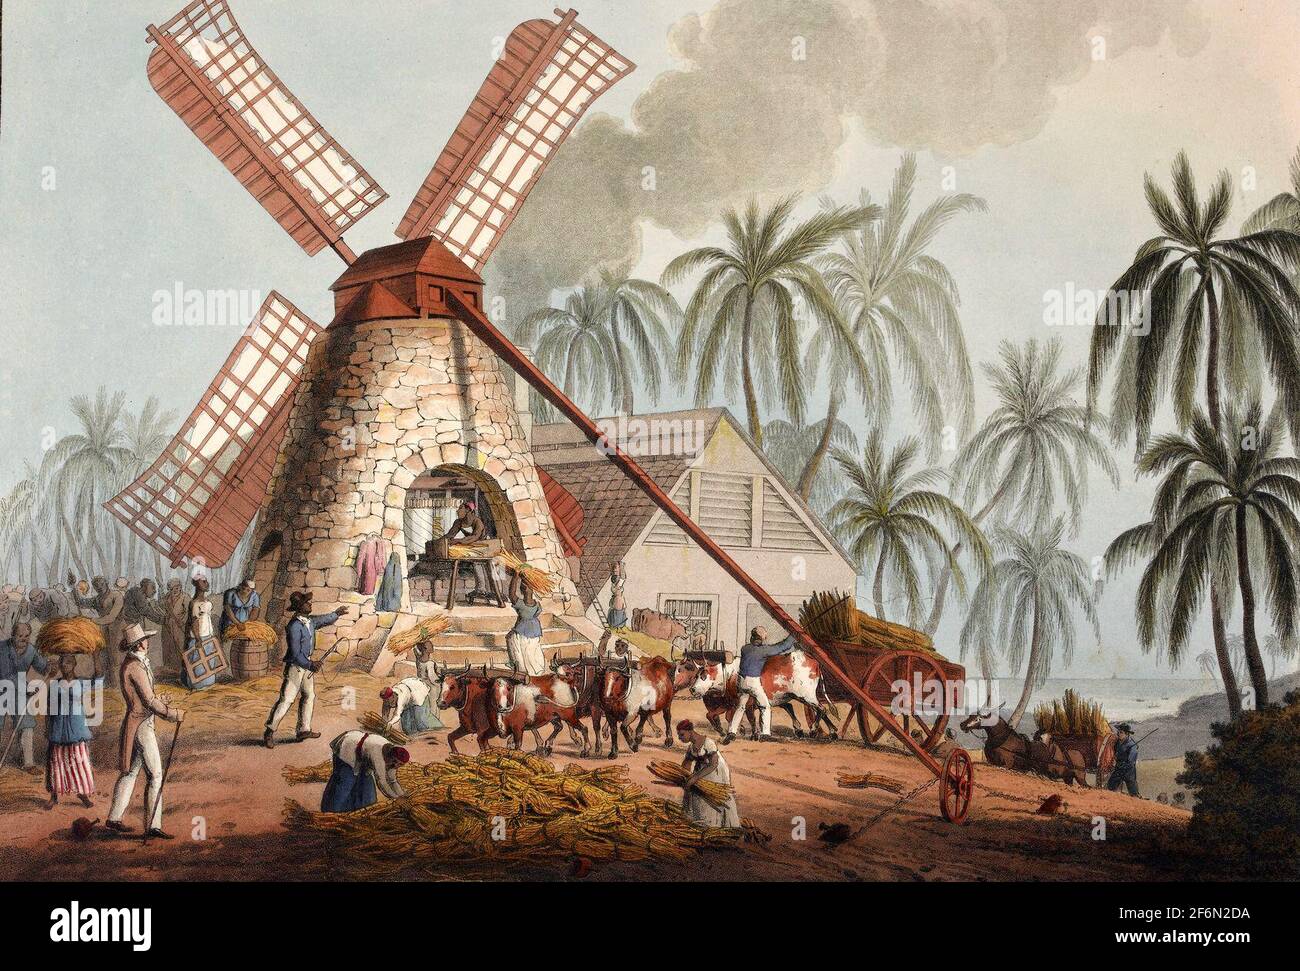 Le Mill Yard - broyage de canne à sucre dans un moulin à vent - William Clark, 1823 Banque D'Images